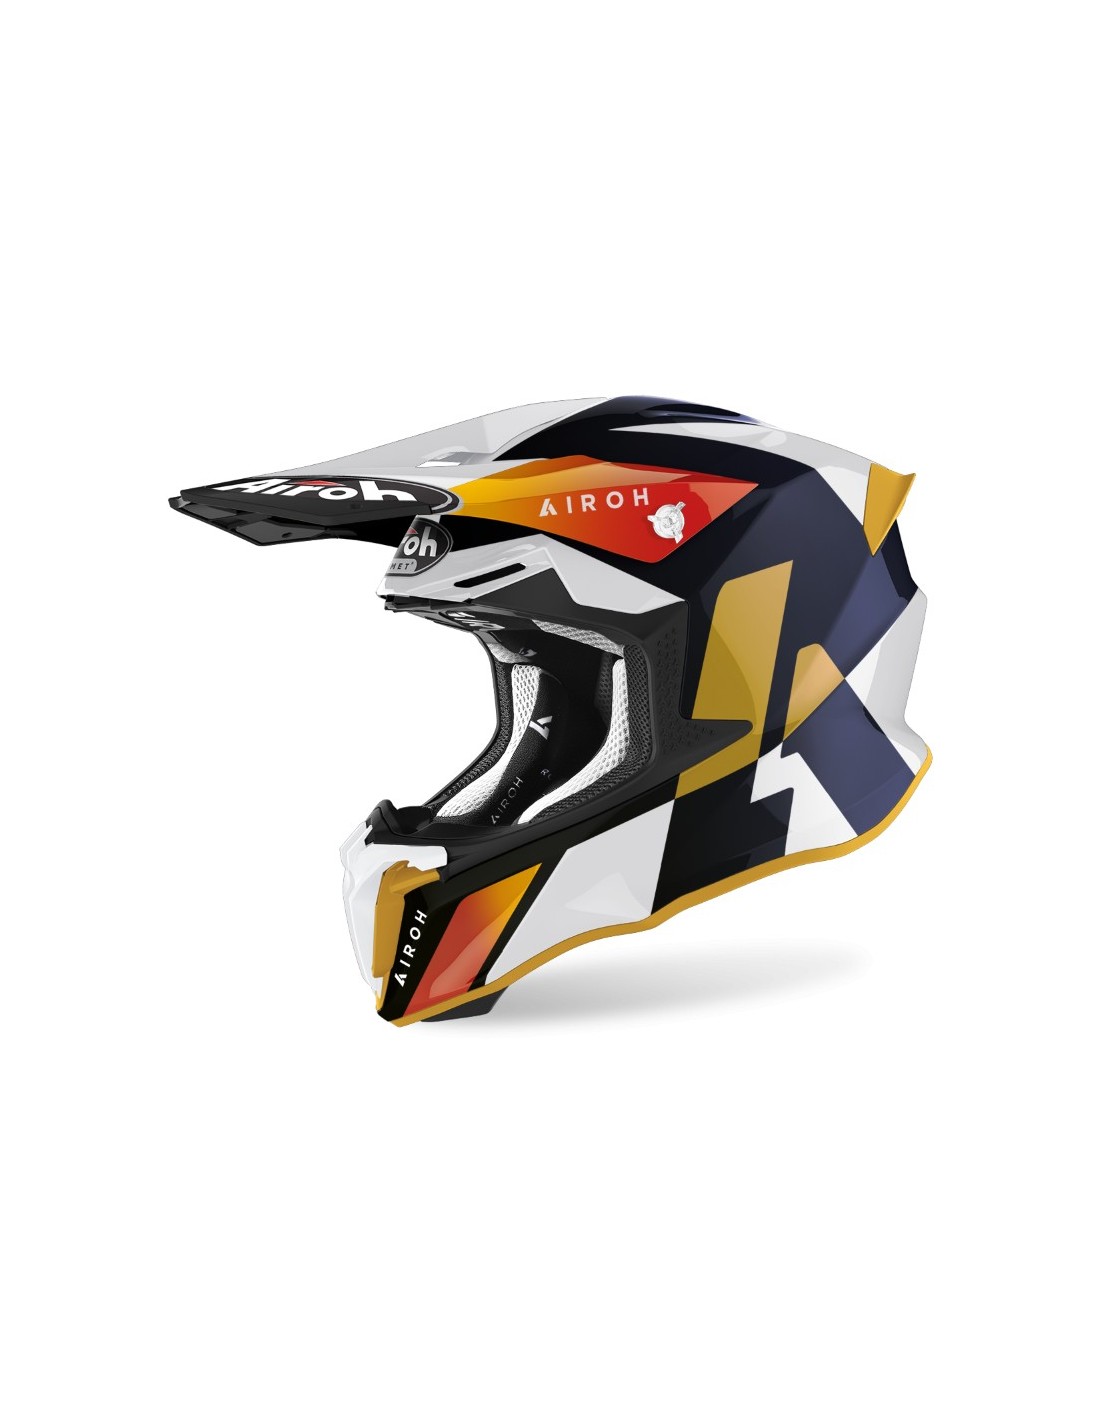 Airoh Twist2.0 Lサイズ モトクロスヘルメット オフロード価格変更致しました